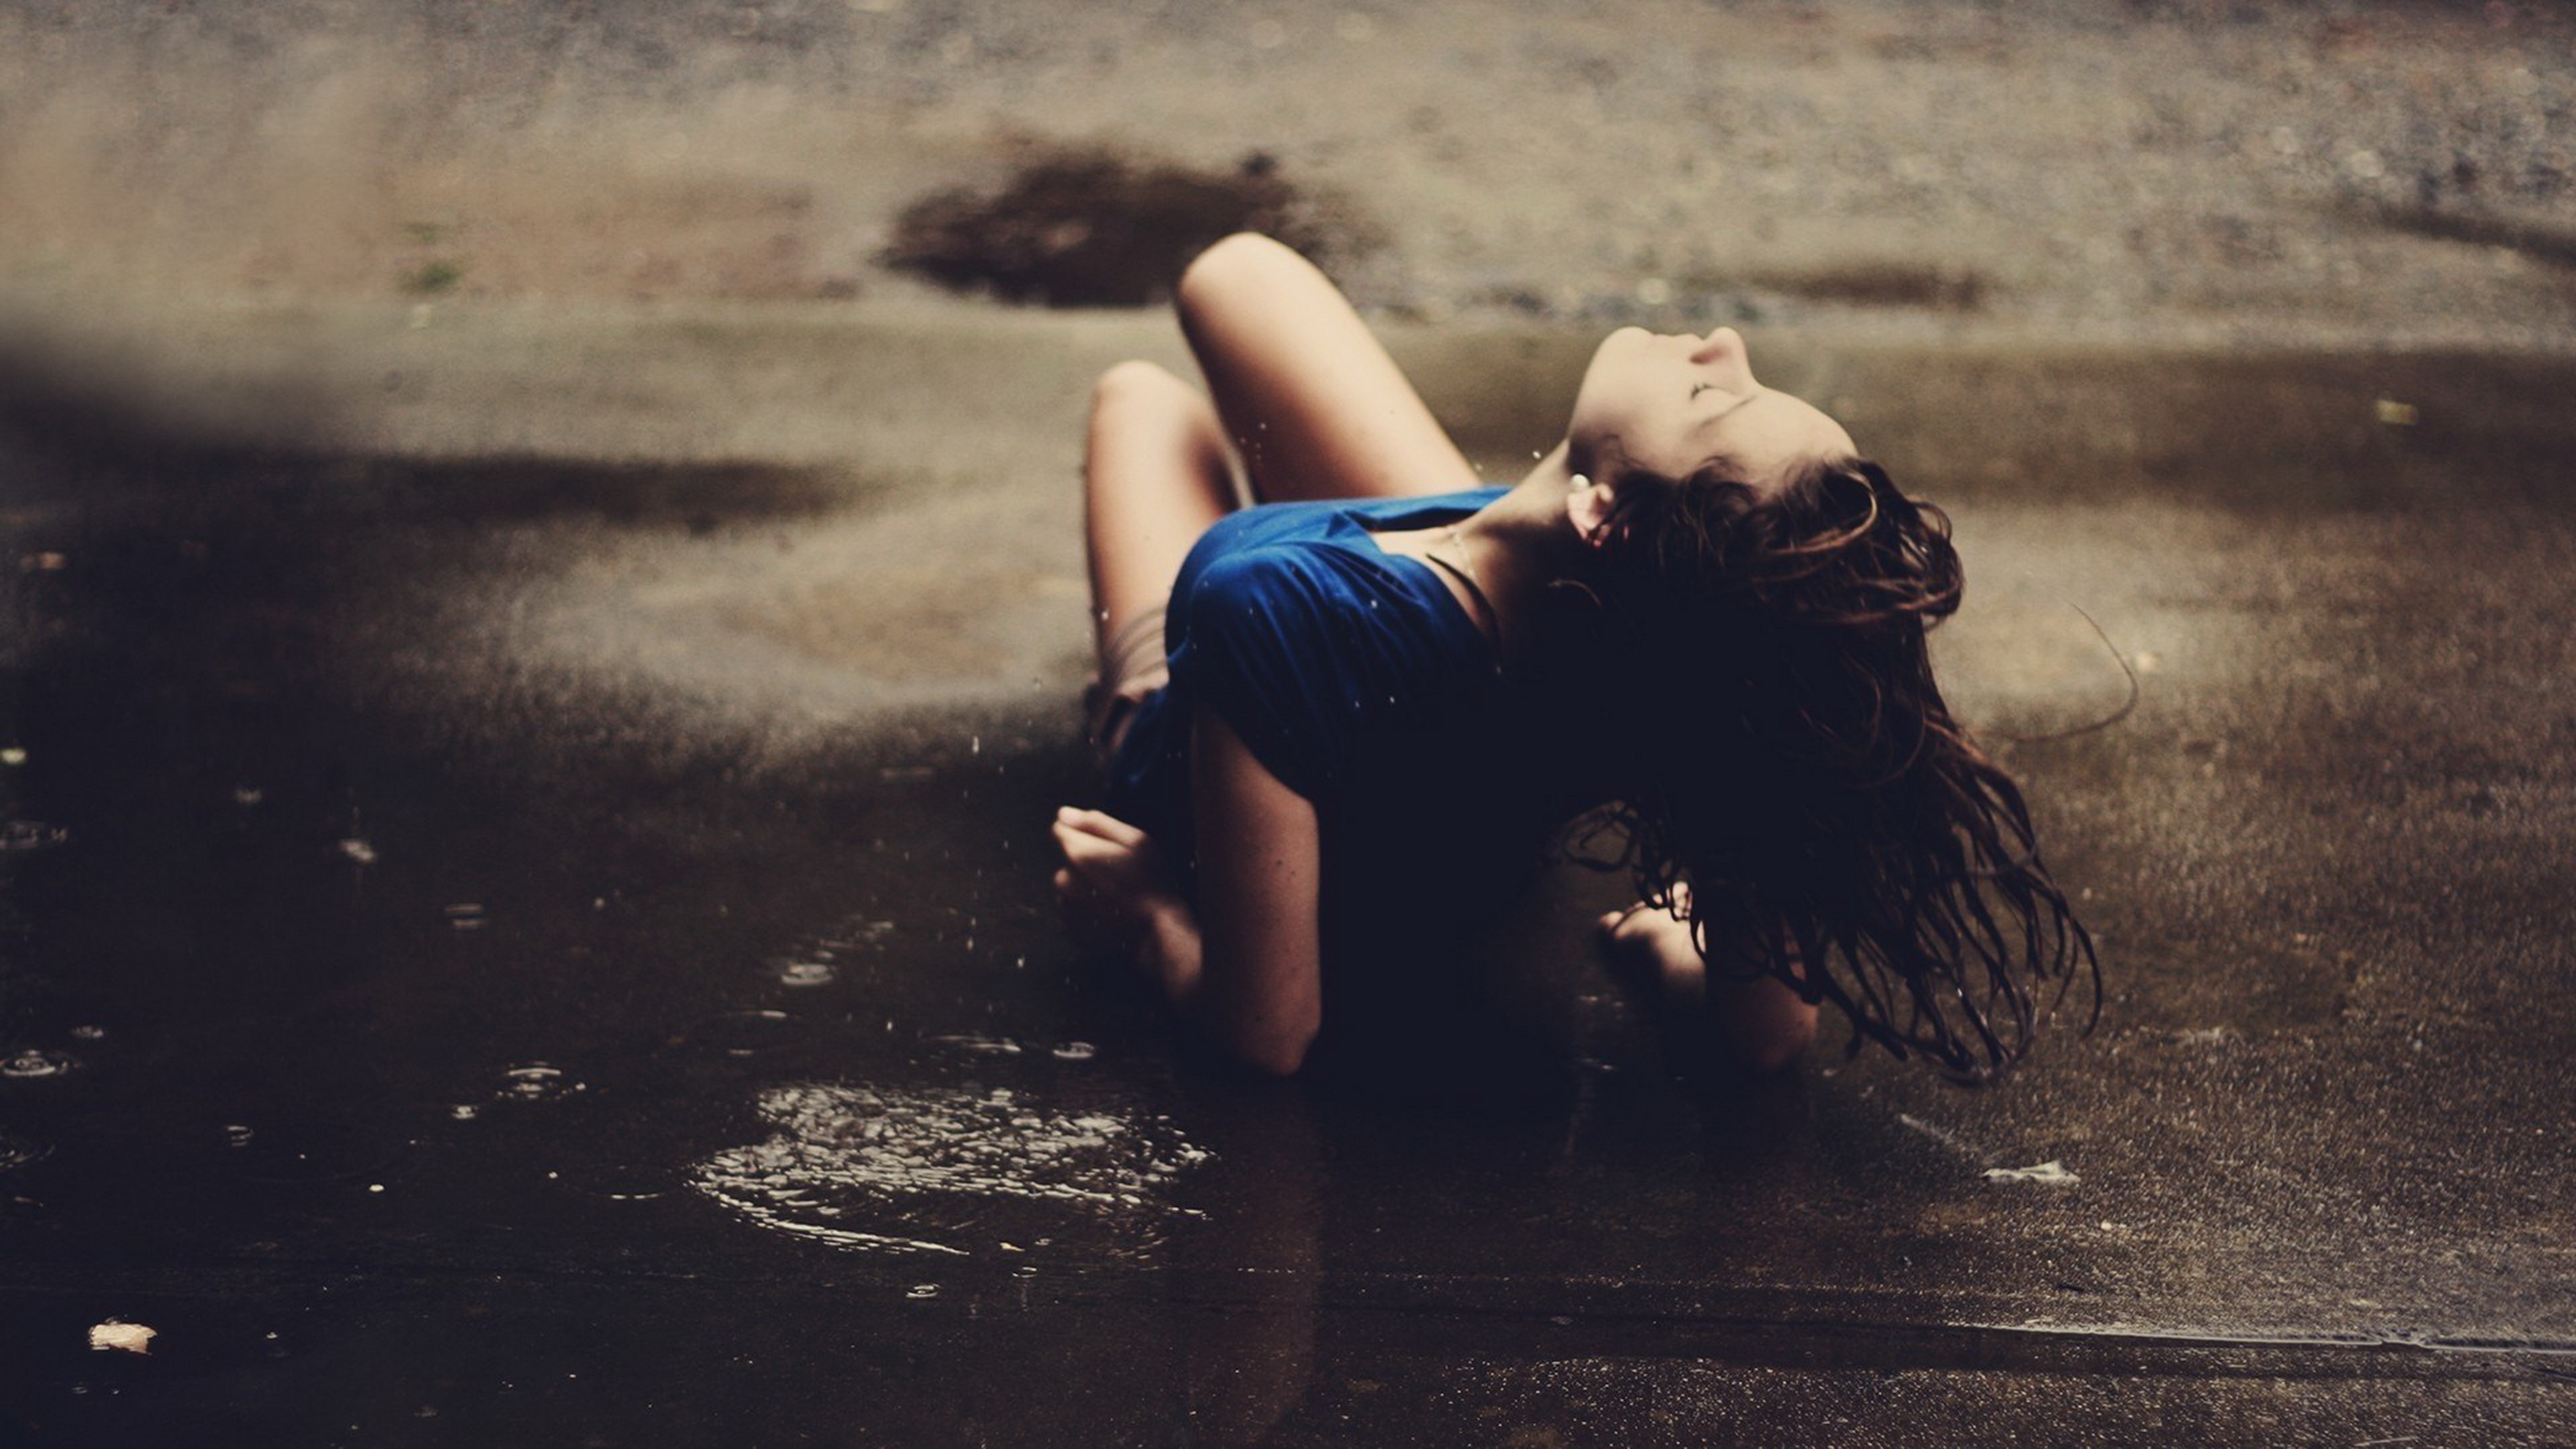 Стенами давила та печаль песня ремикс. Грустная девушка. Девушка под дождем. Девушка дождь. Грустная красивая девушка.